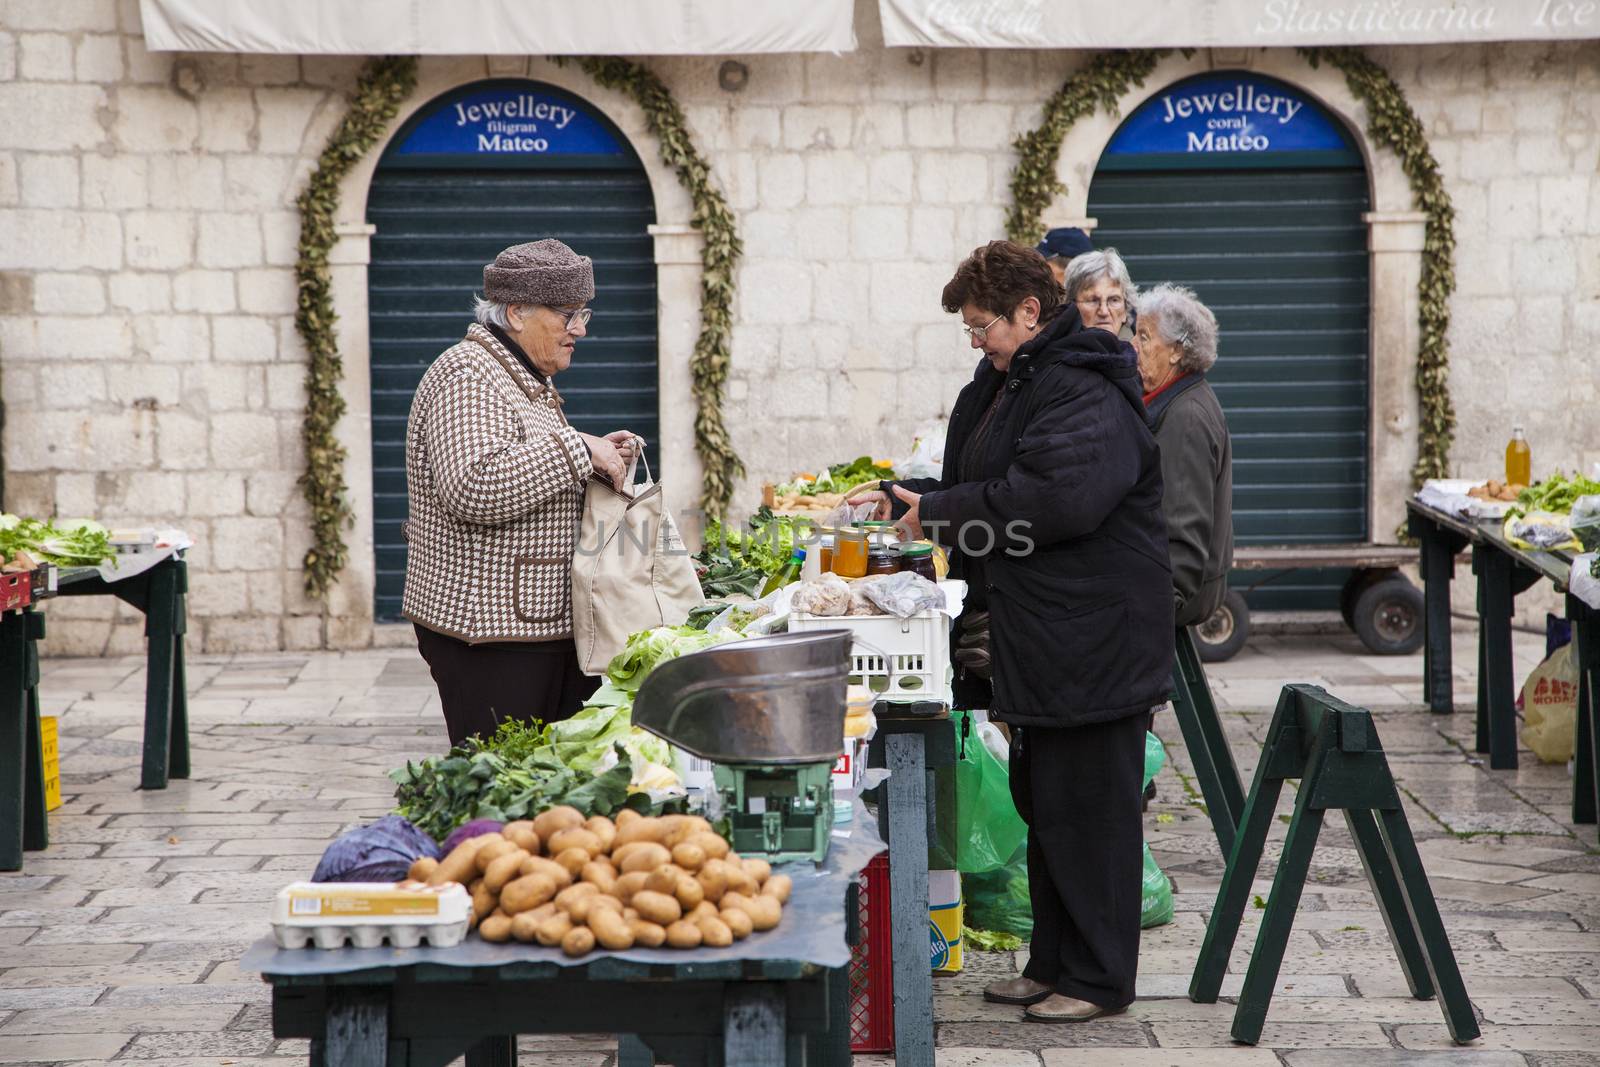 Market scene in Dubrovnik